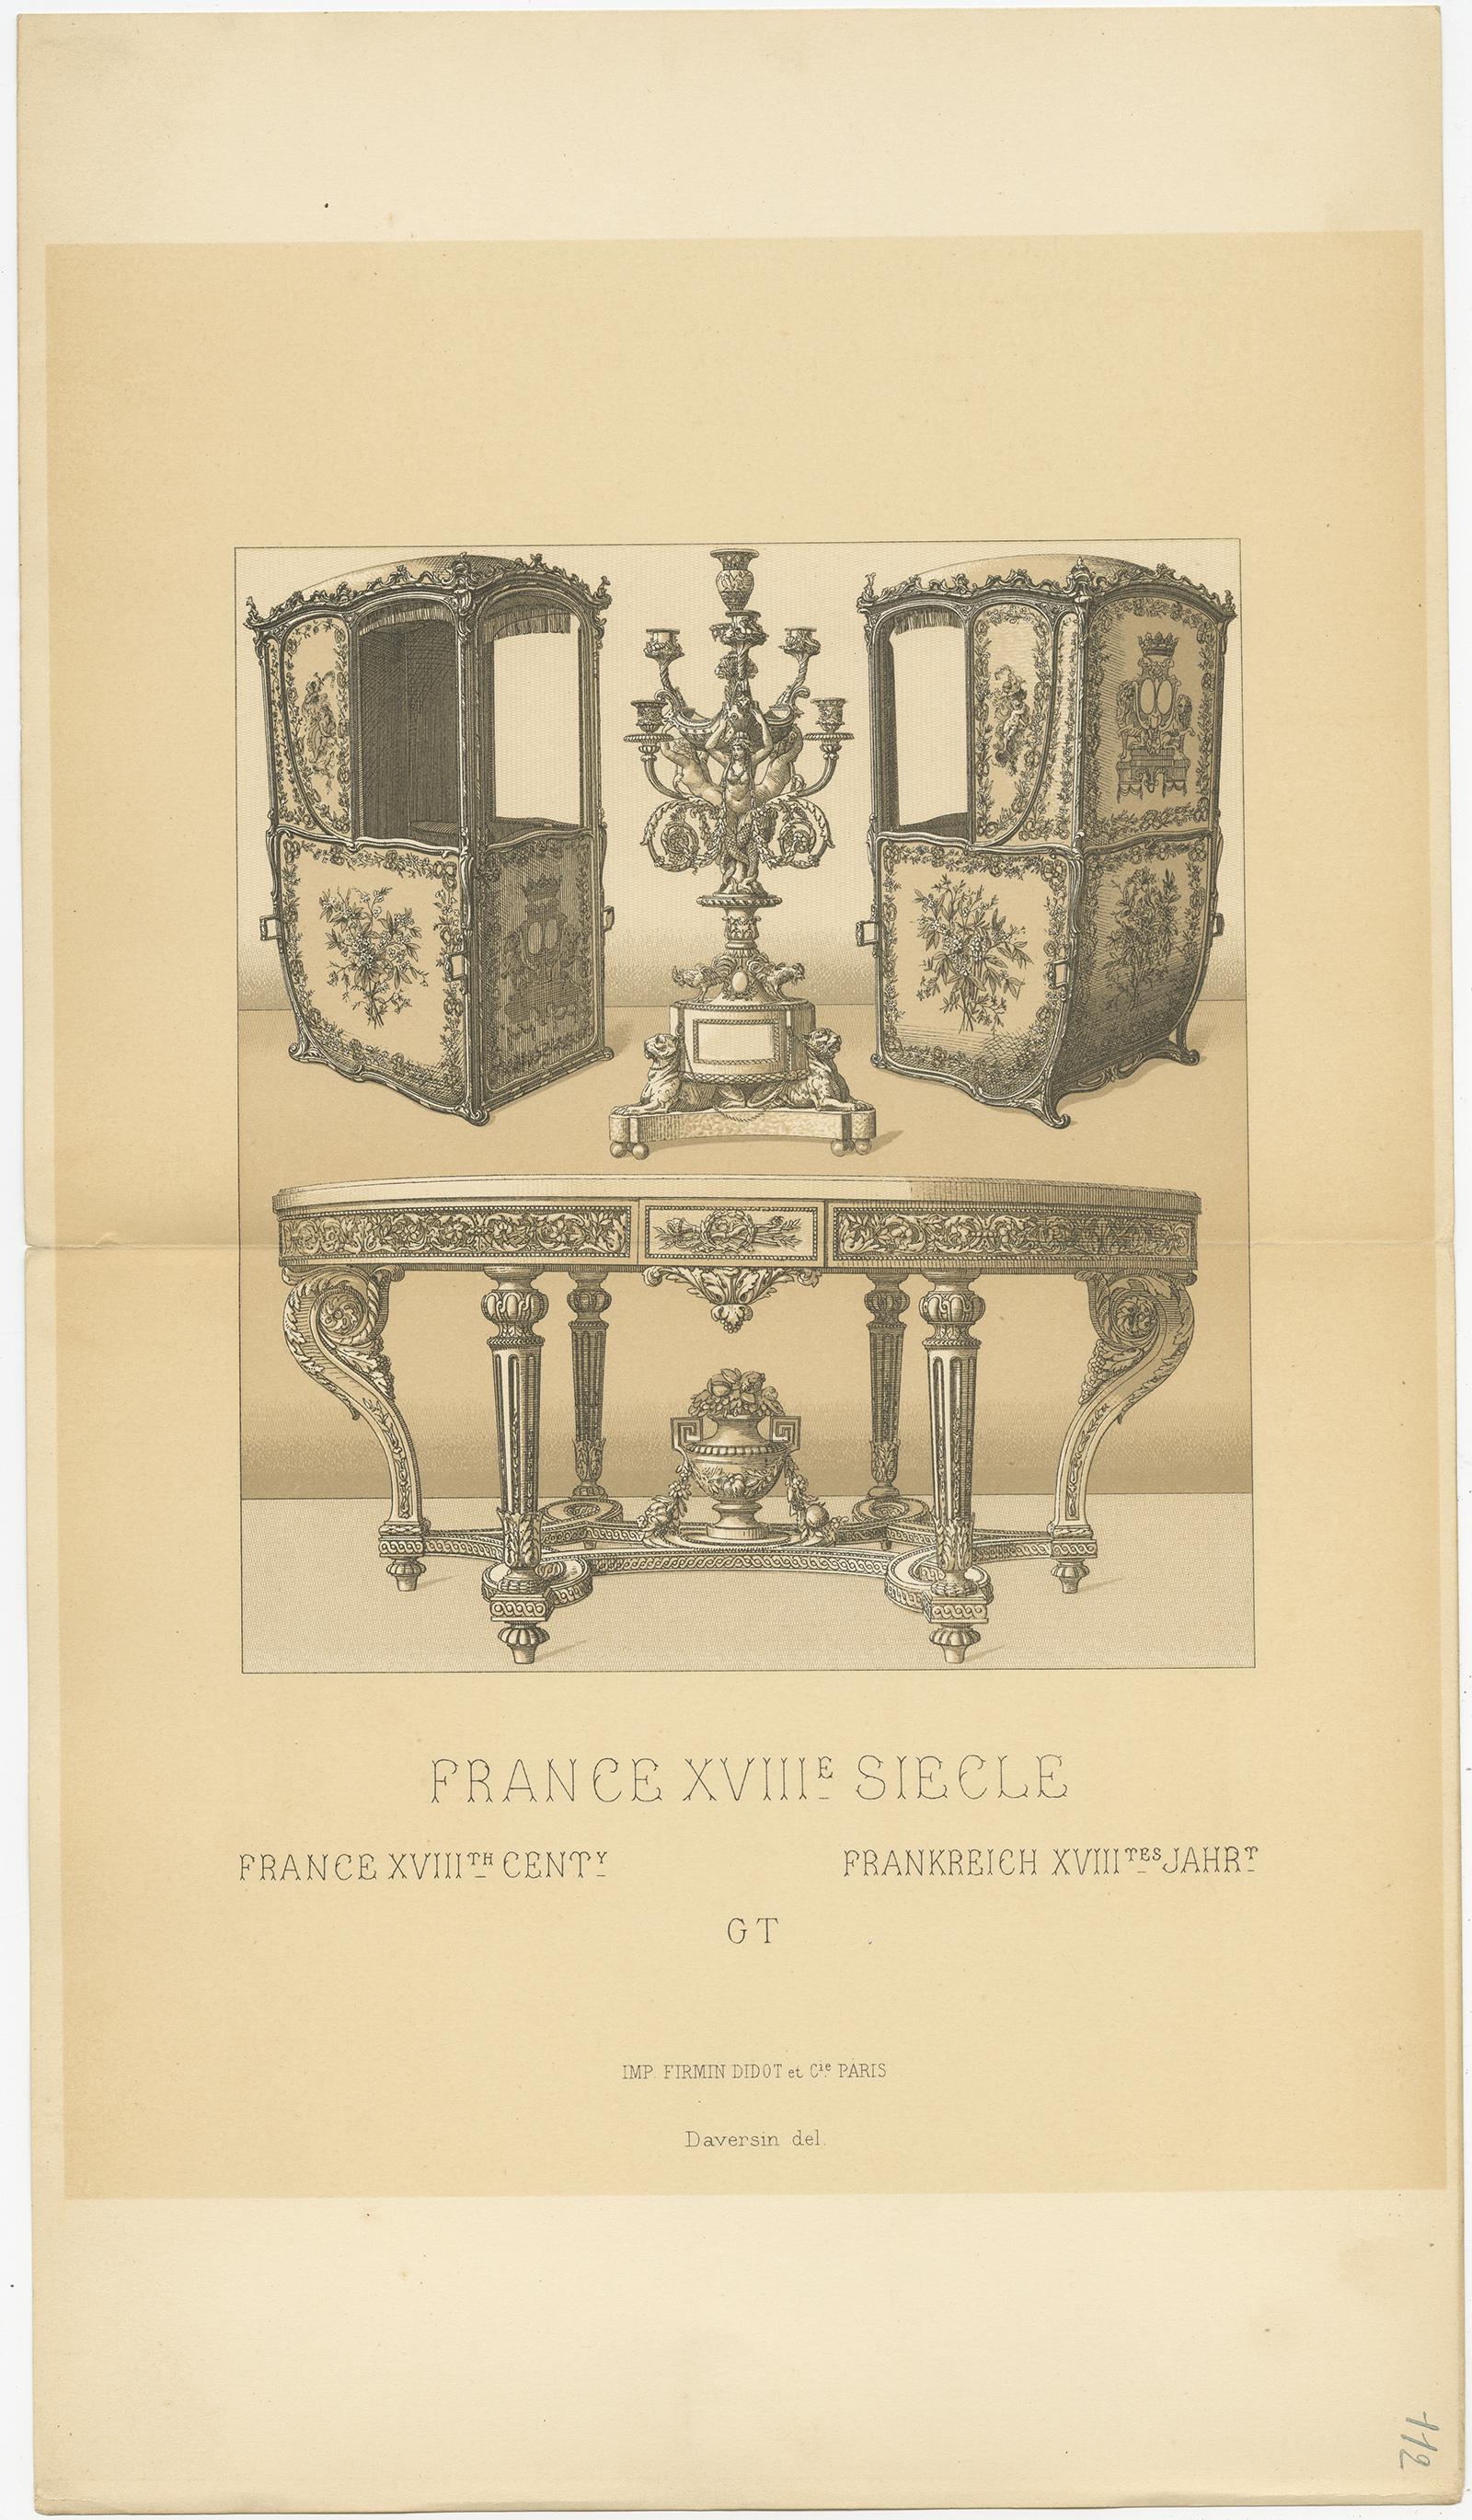 Antiker Druck mit dem Titel 'Frankreich XVIII. Cent - Frankreich XVIIIe, Siecle - Frankreich XVIIItes Jahr'. Chromolithografie von französischen Möbeln aus dem 18. Jahrhundert. Dieser Druck stammt aus 